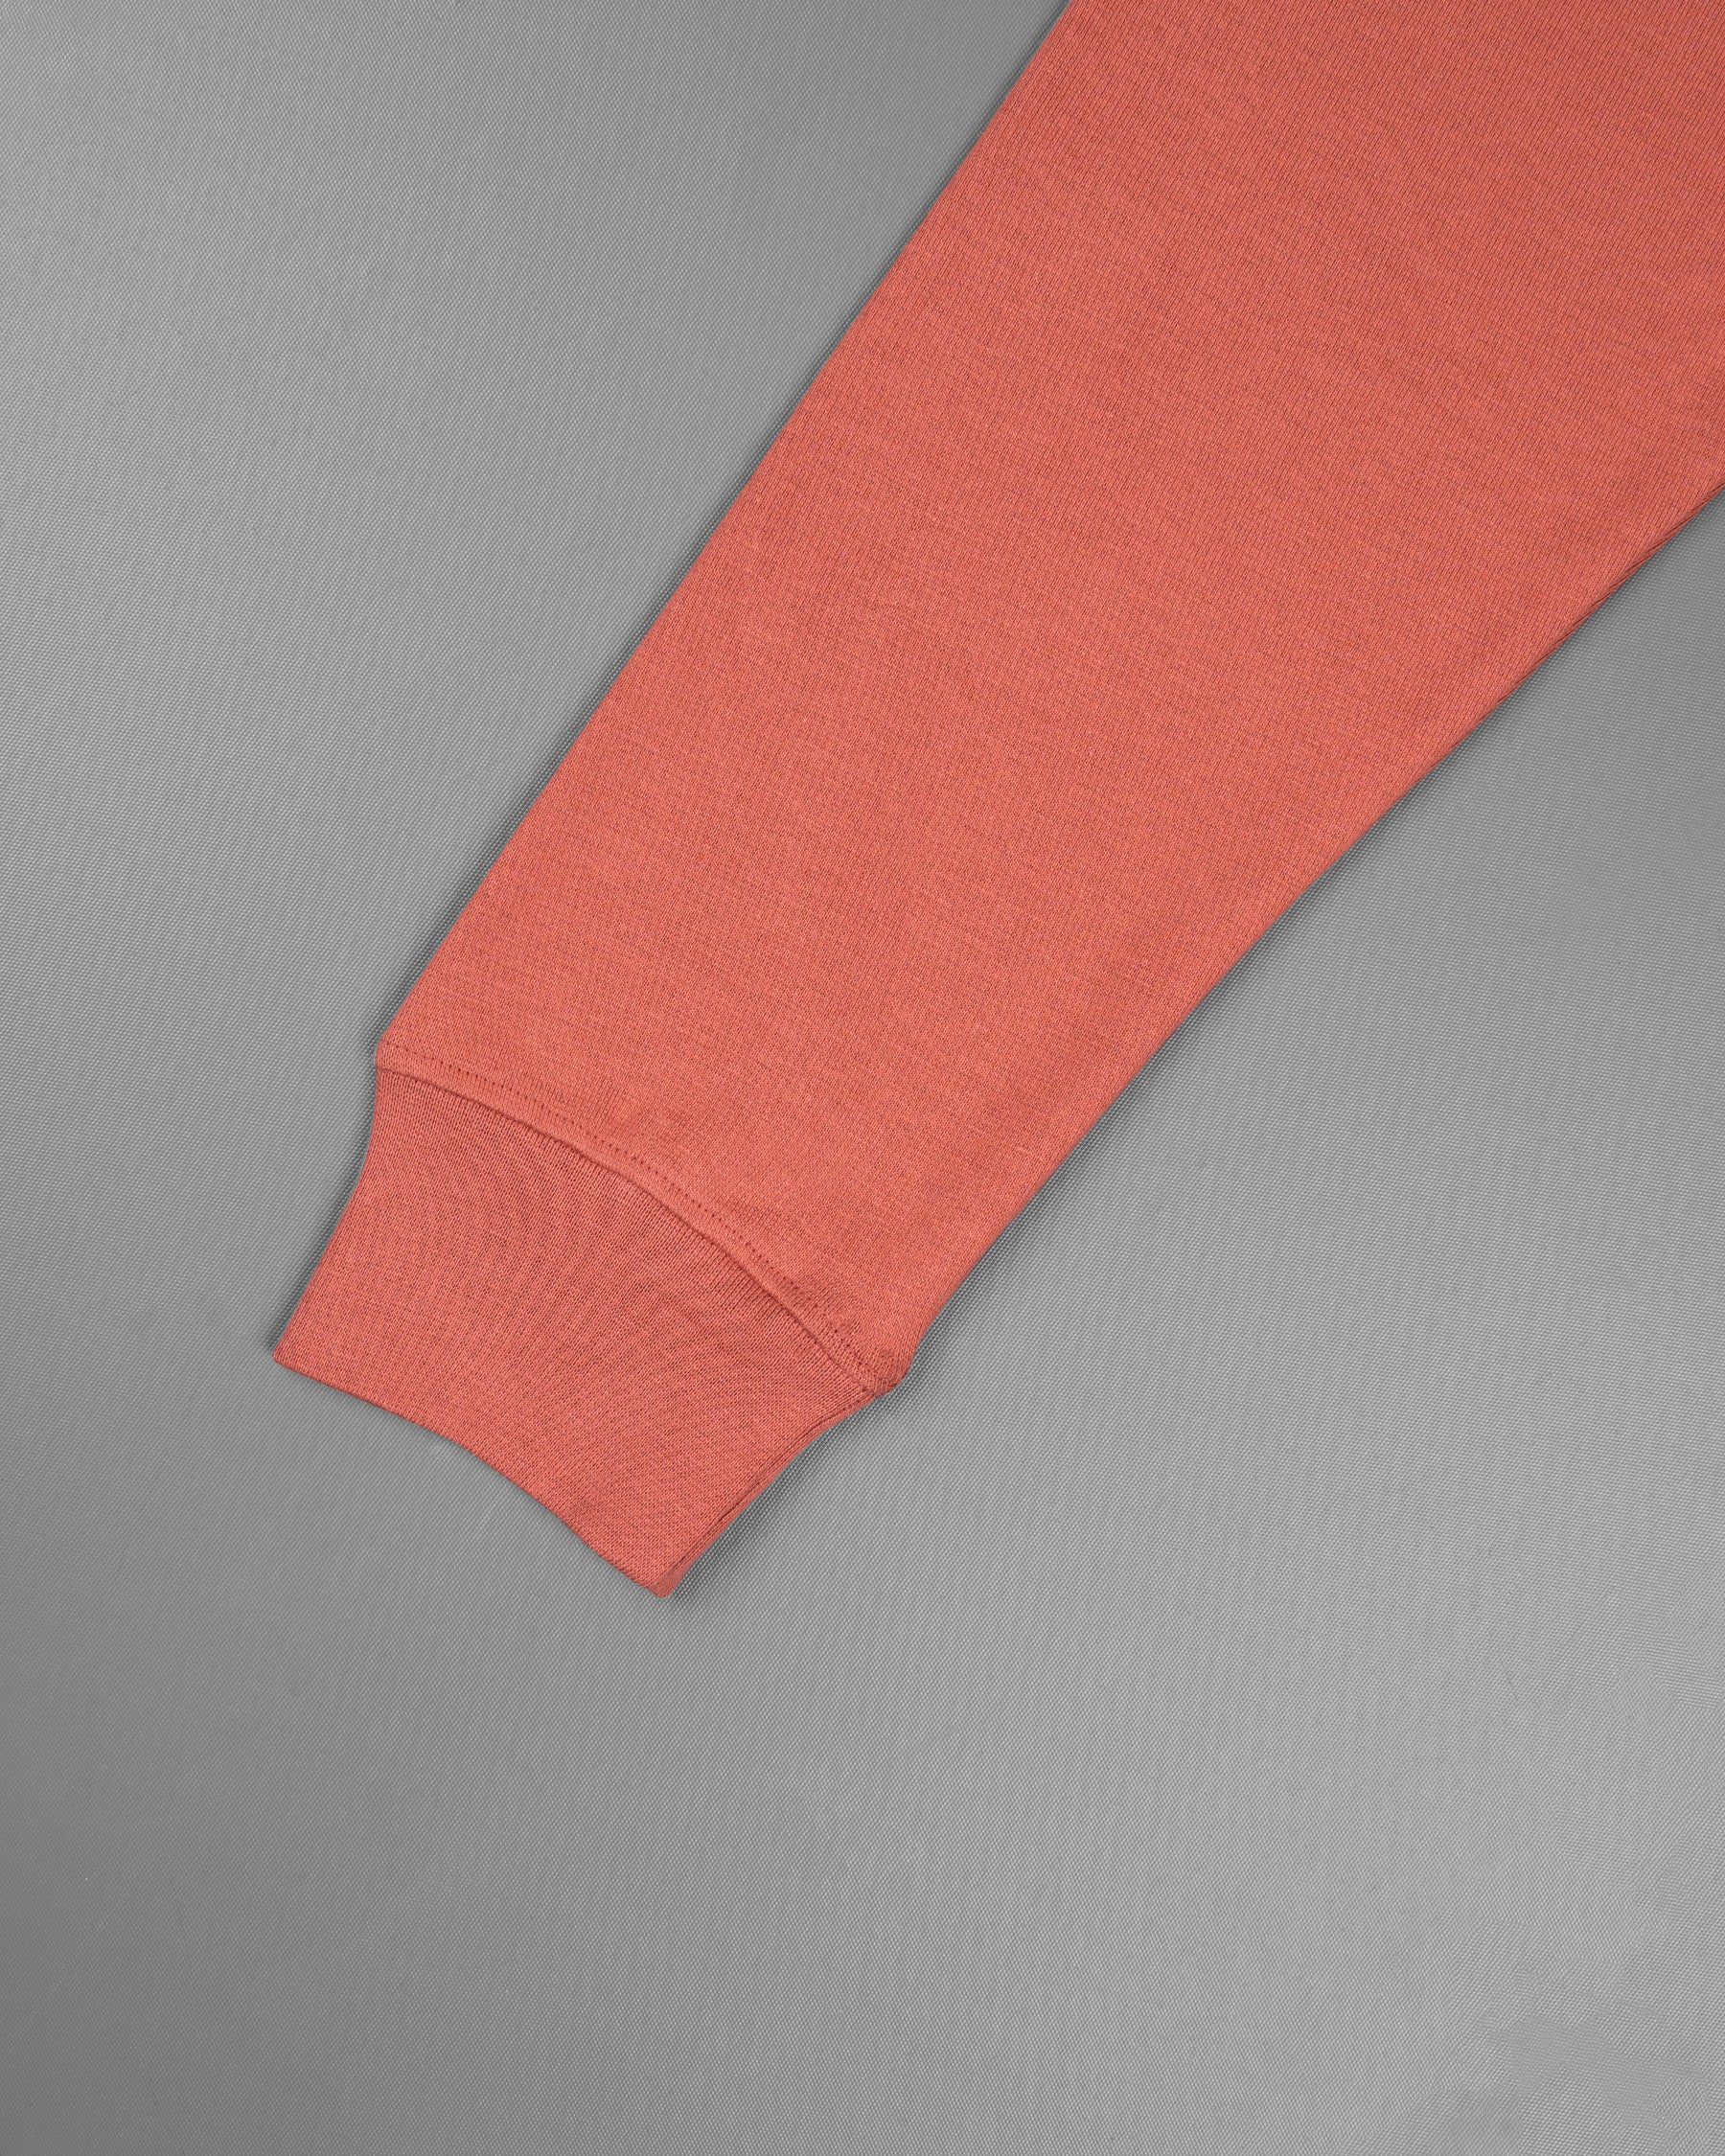 Terra Cotta Full Sleeve Premium Cotton Jersey Sweatshirt TS479-S, TS479-M, TS479-L, TS479-XL, TS479-XXL